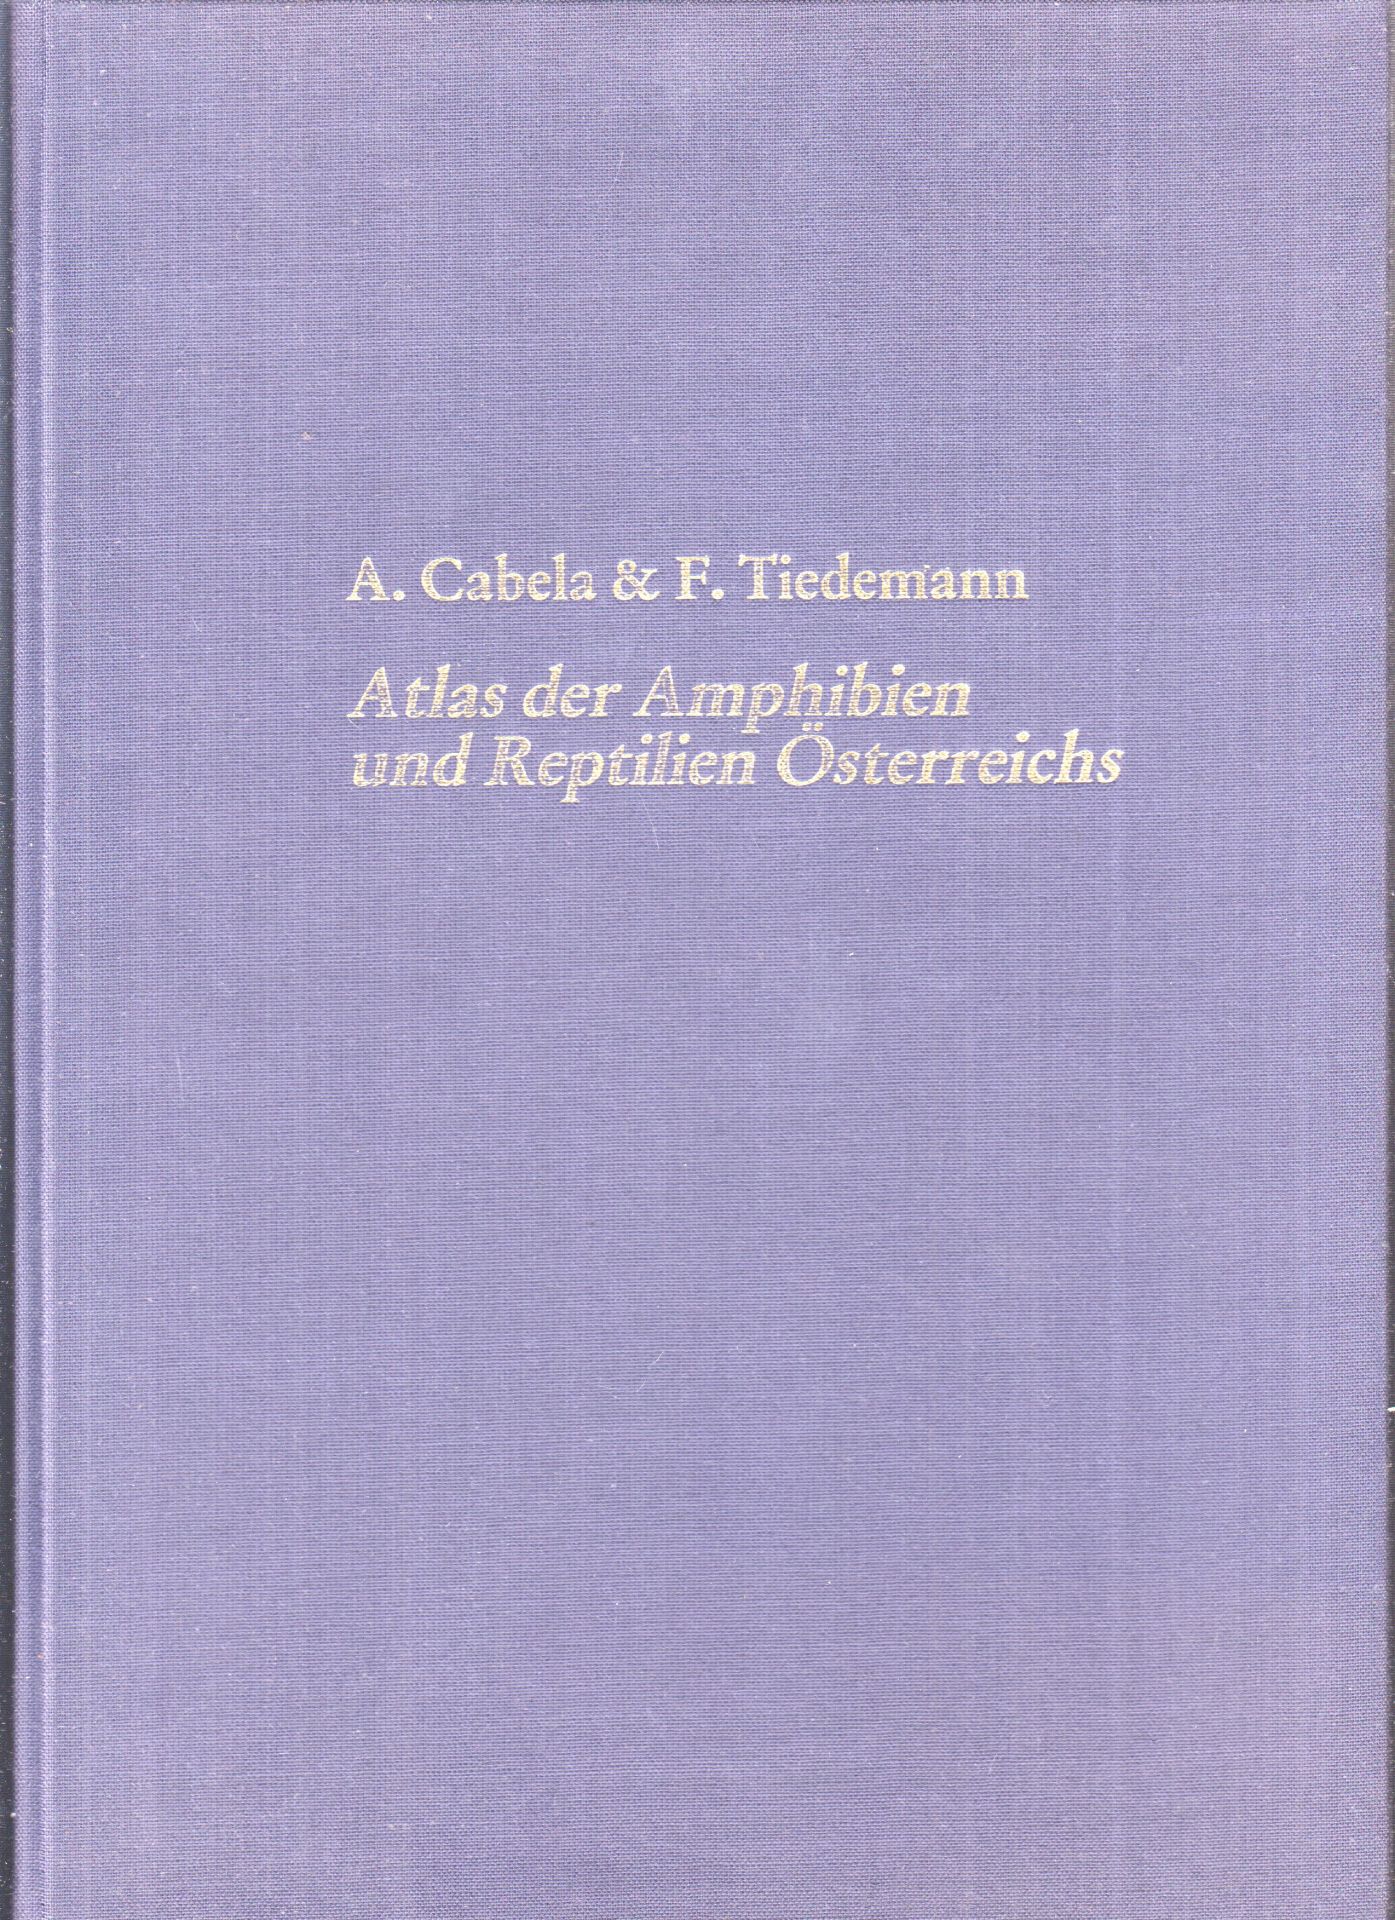 CABELA, A. - TIEDEMANN, F. Atlas der Amphibien und Reptilien sterreichs Stand (1984).